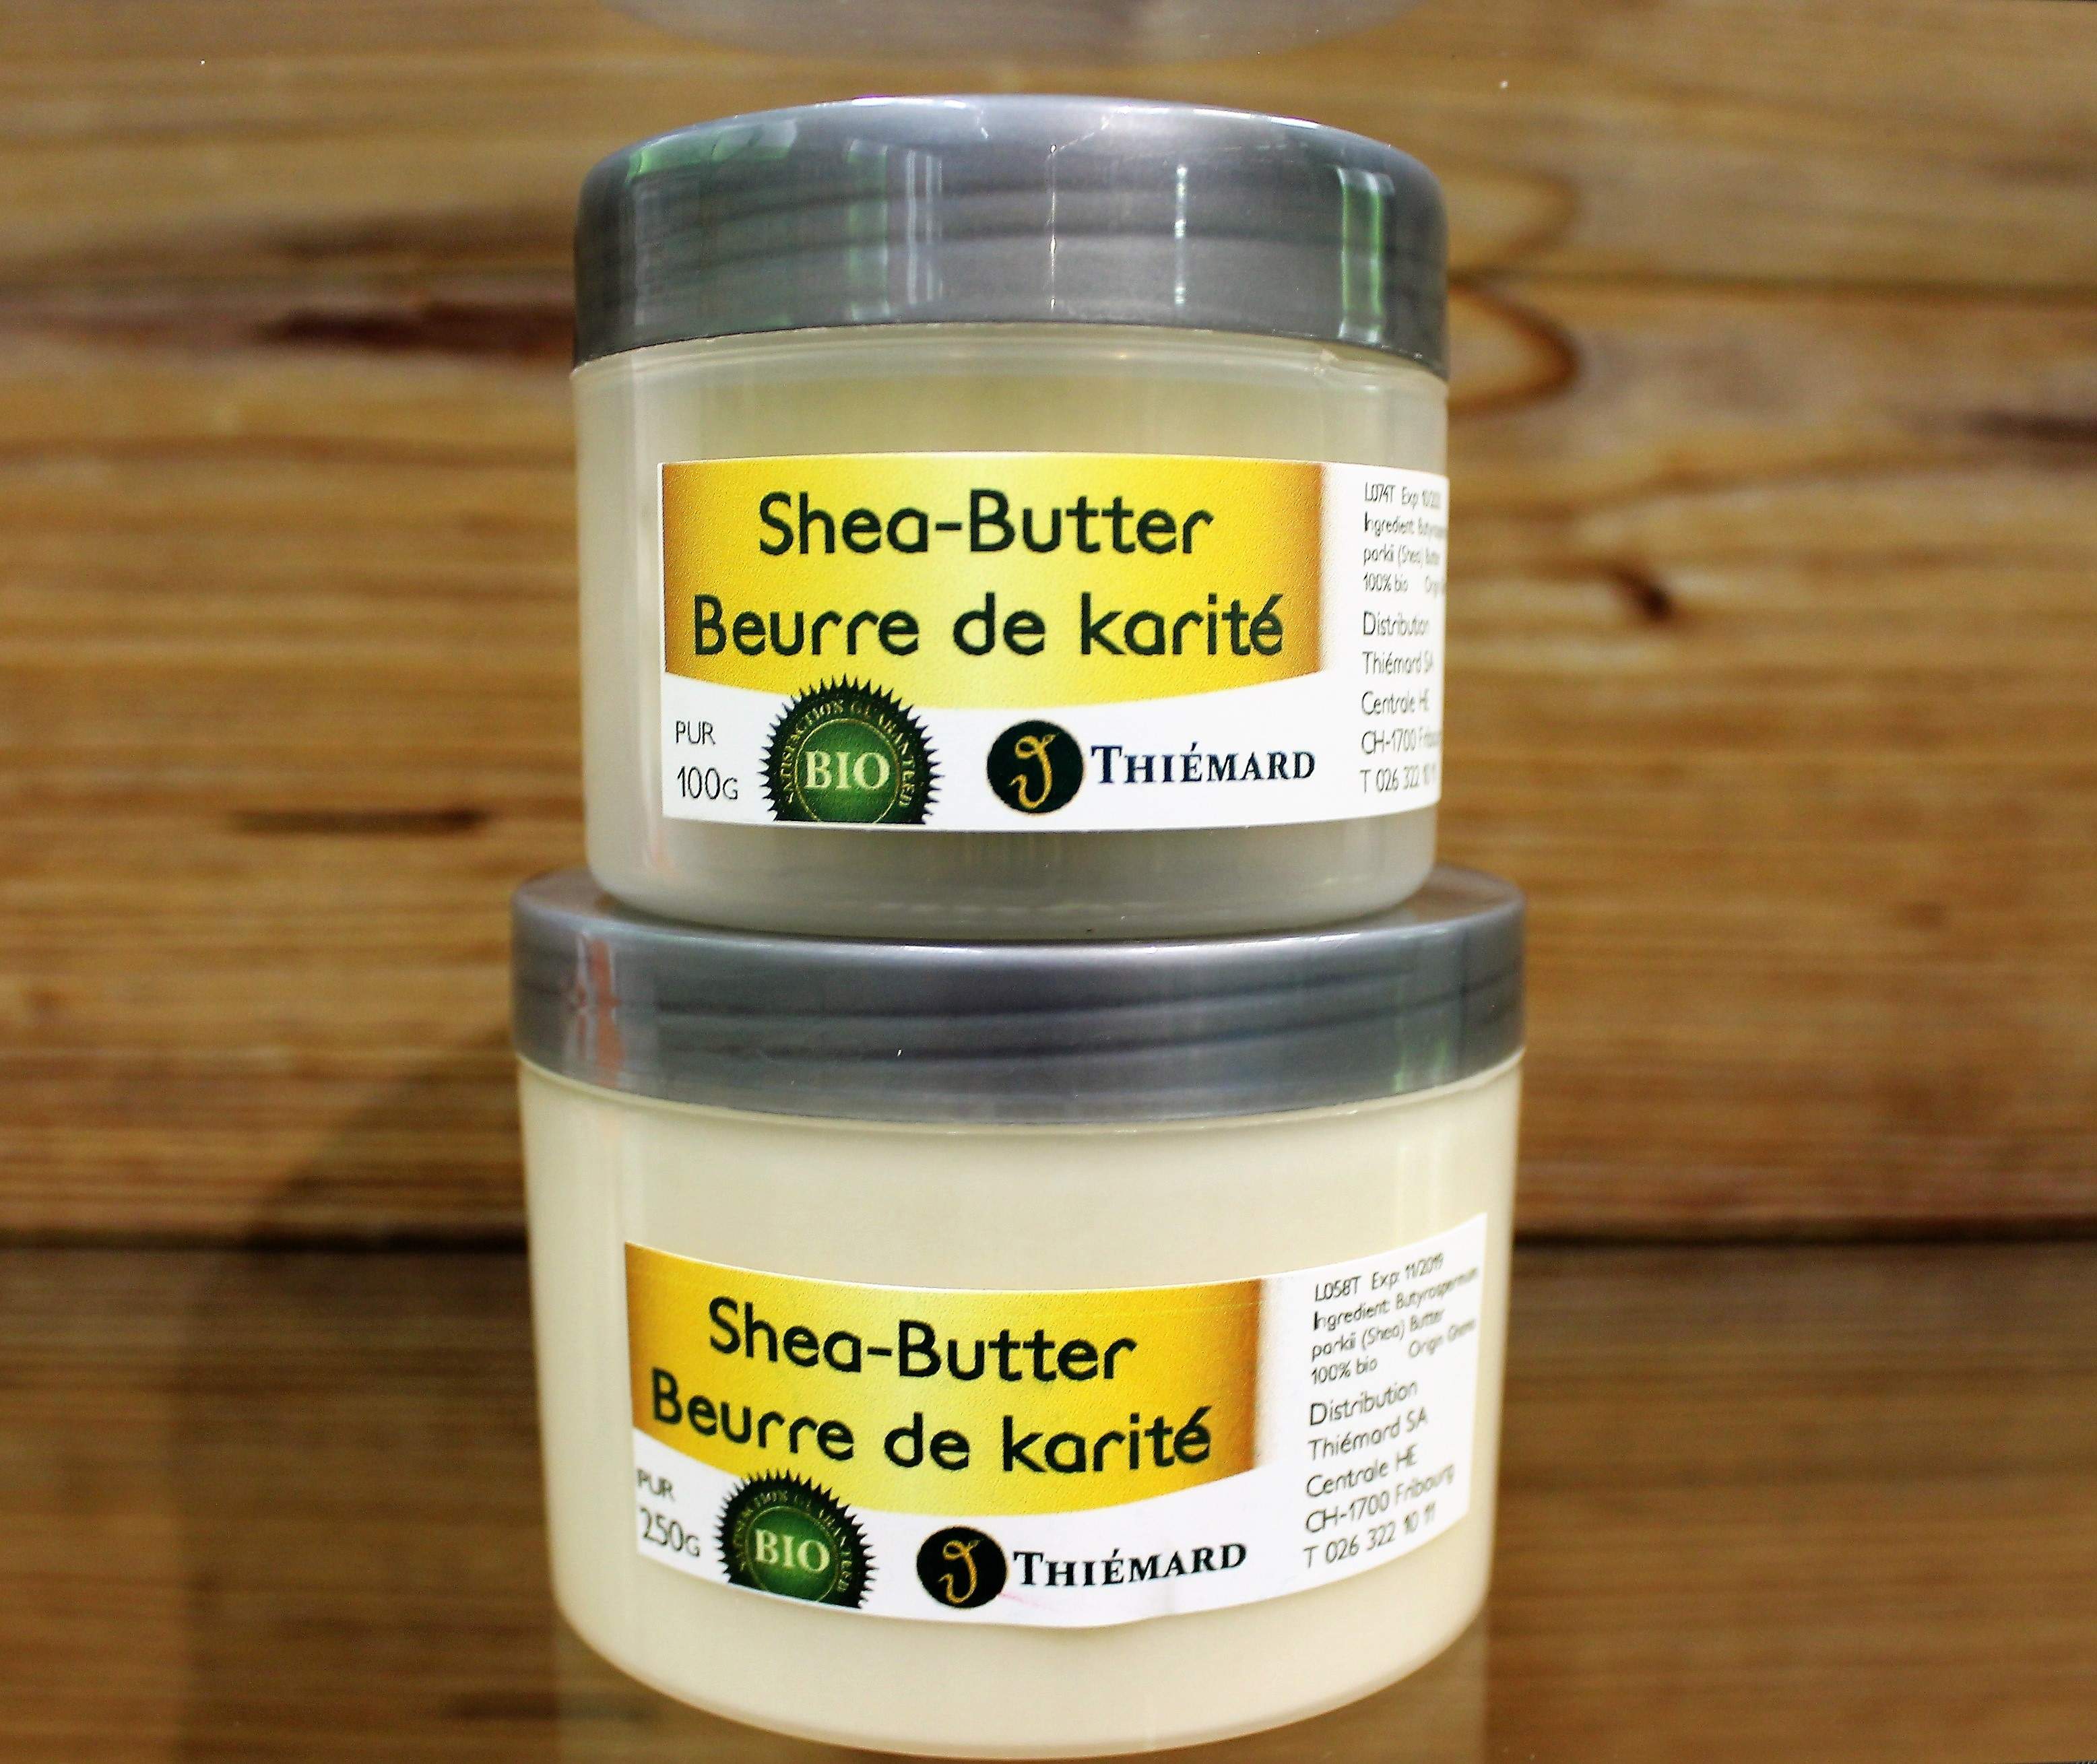 Shea-Butter pur 100% Bio 100g